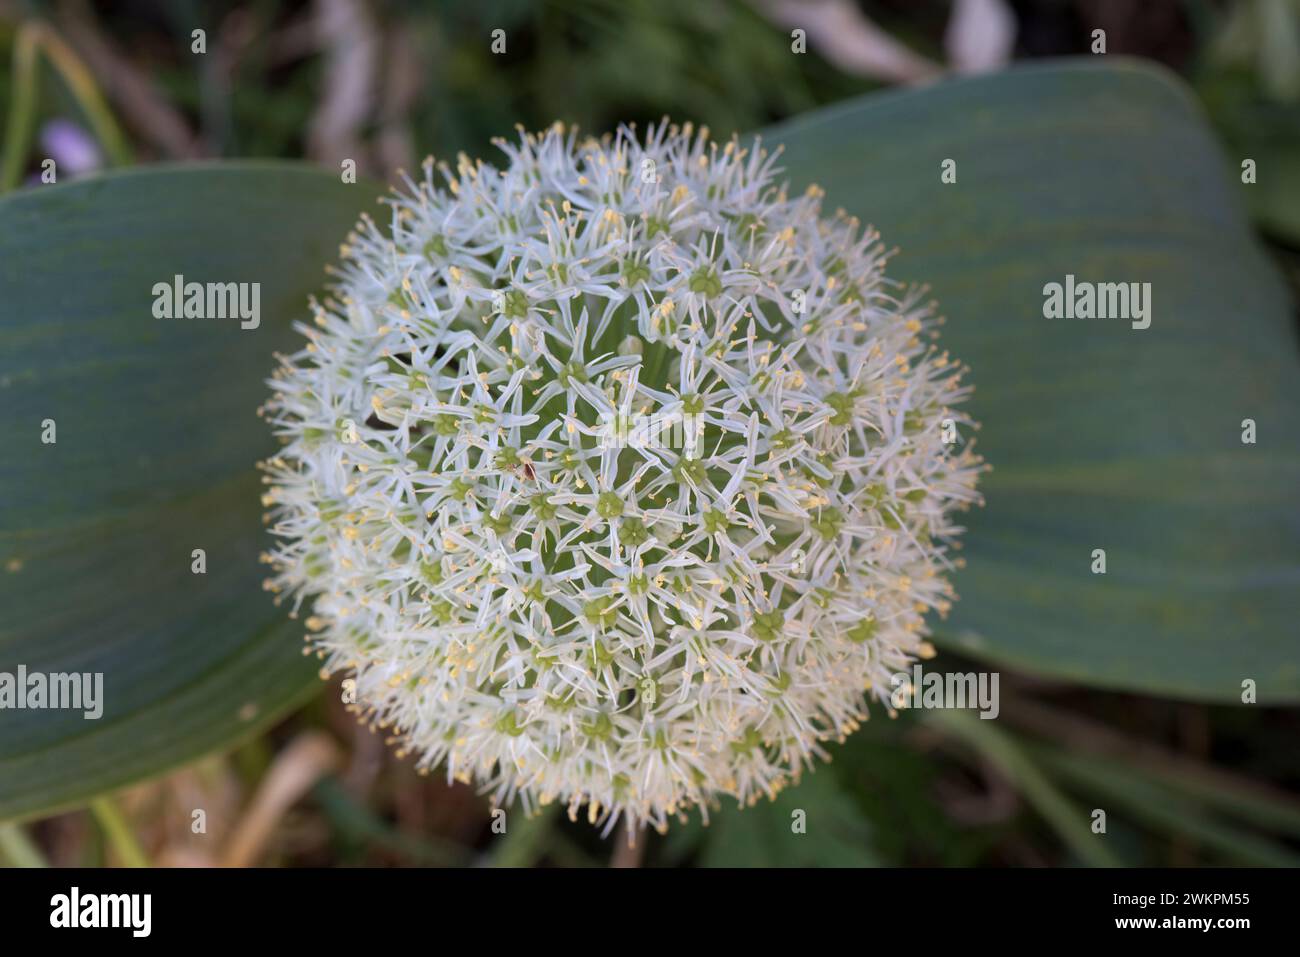 Turkistan oder Zierzwiebeln (Allium karataviense) kugelförmiger weißer Doldenblütenkopf an einem kurzen Stiel mit zwei breiten graugrünen Blättern. Stockfoto